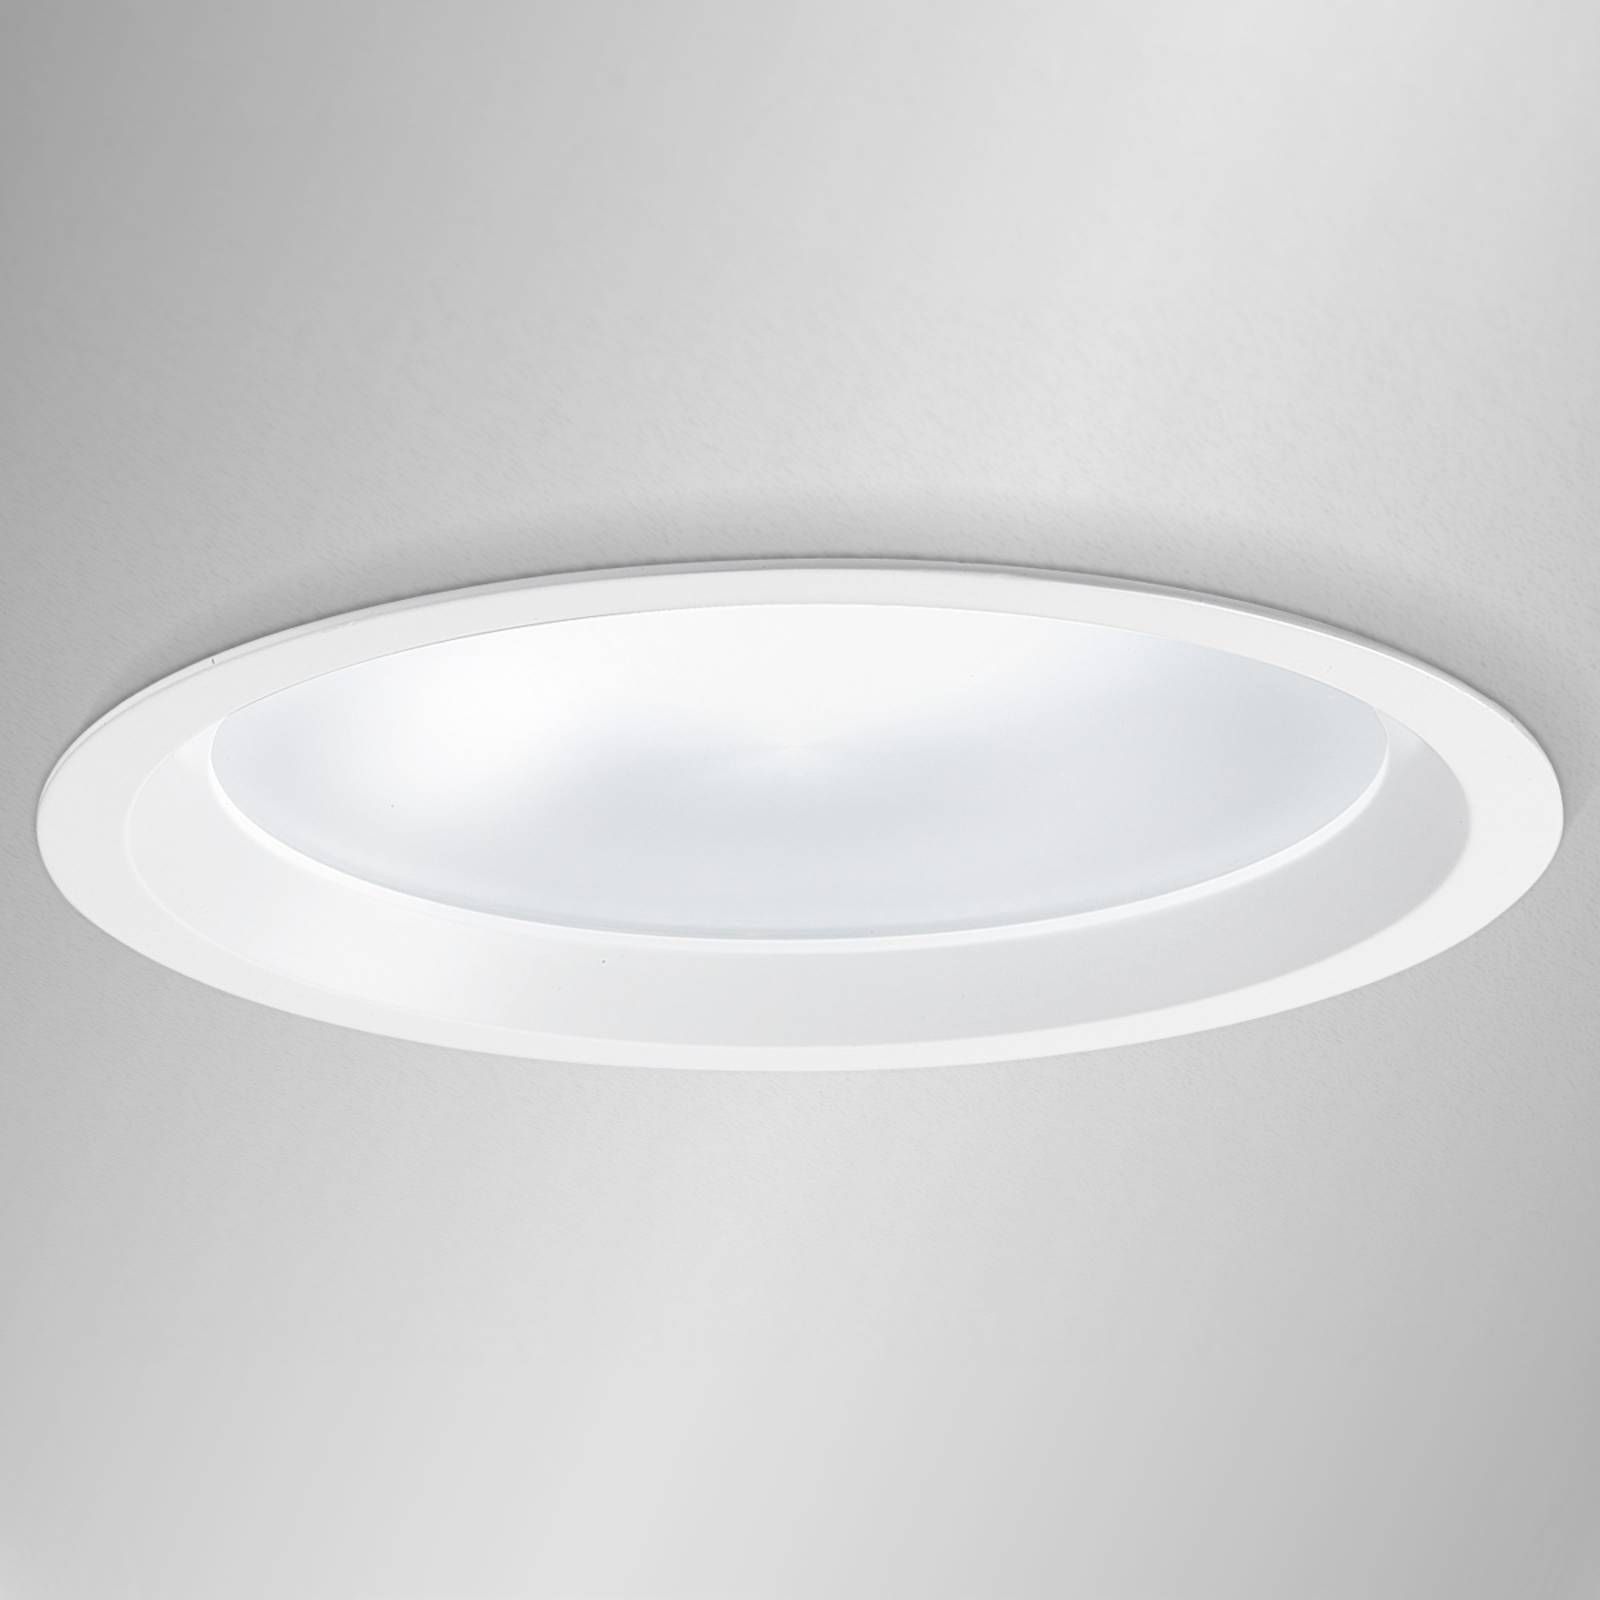 23 cm Durchmesser - LED-Einbaudownlight Strato 230 von Egger Licht